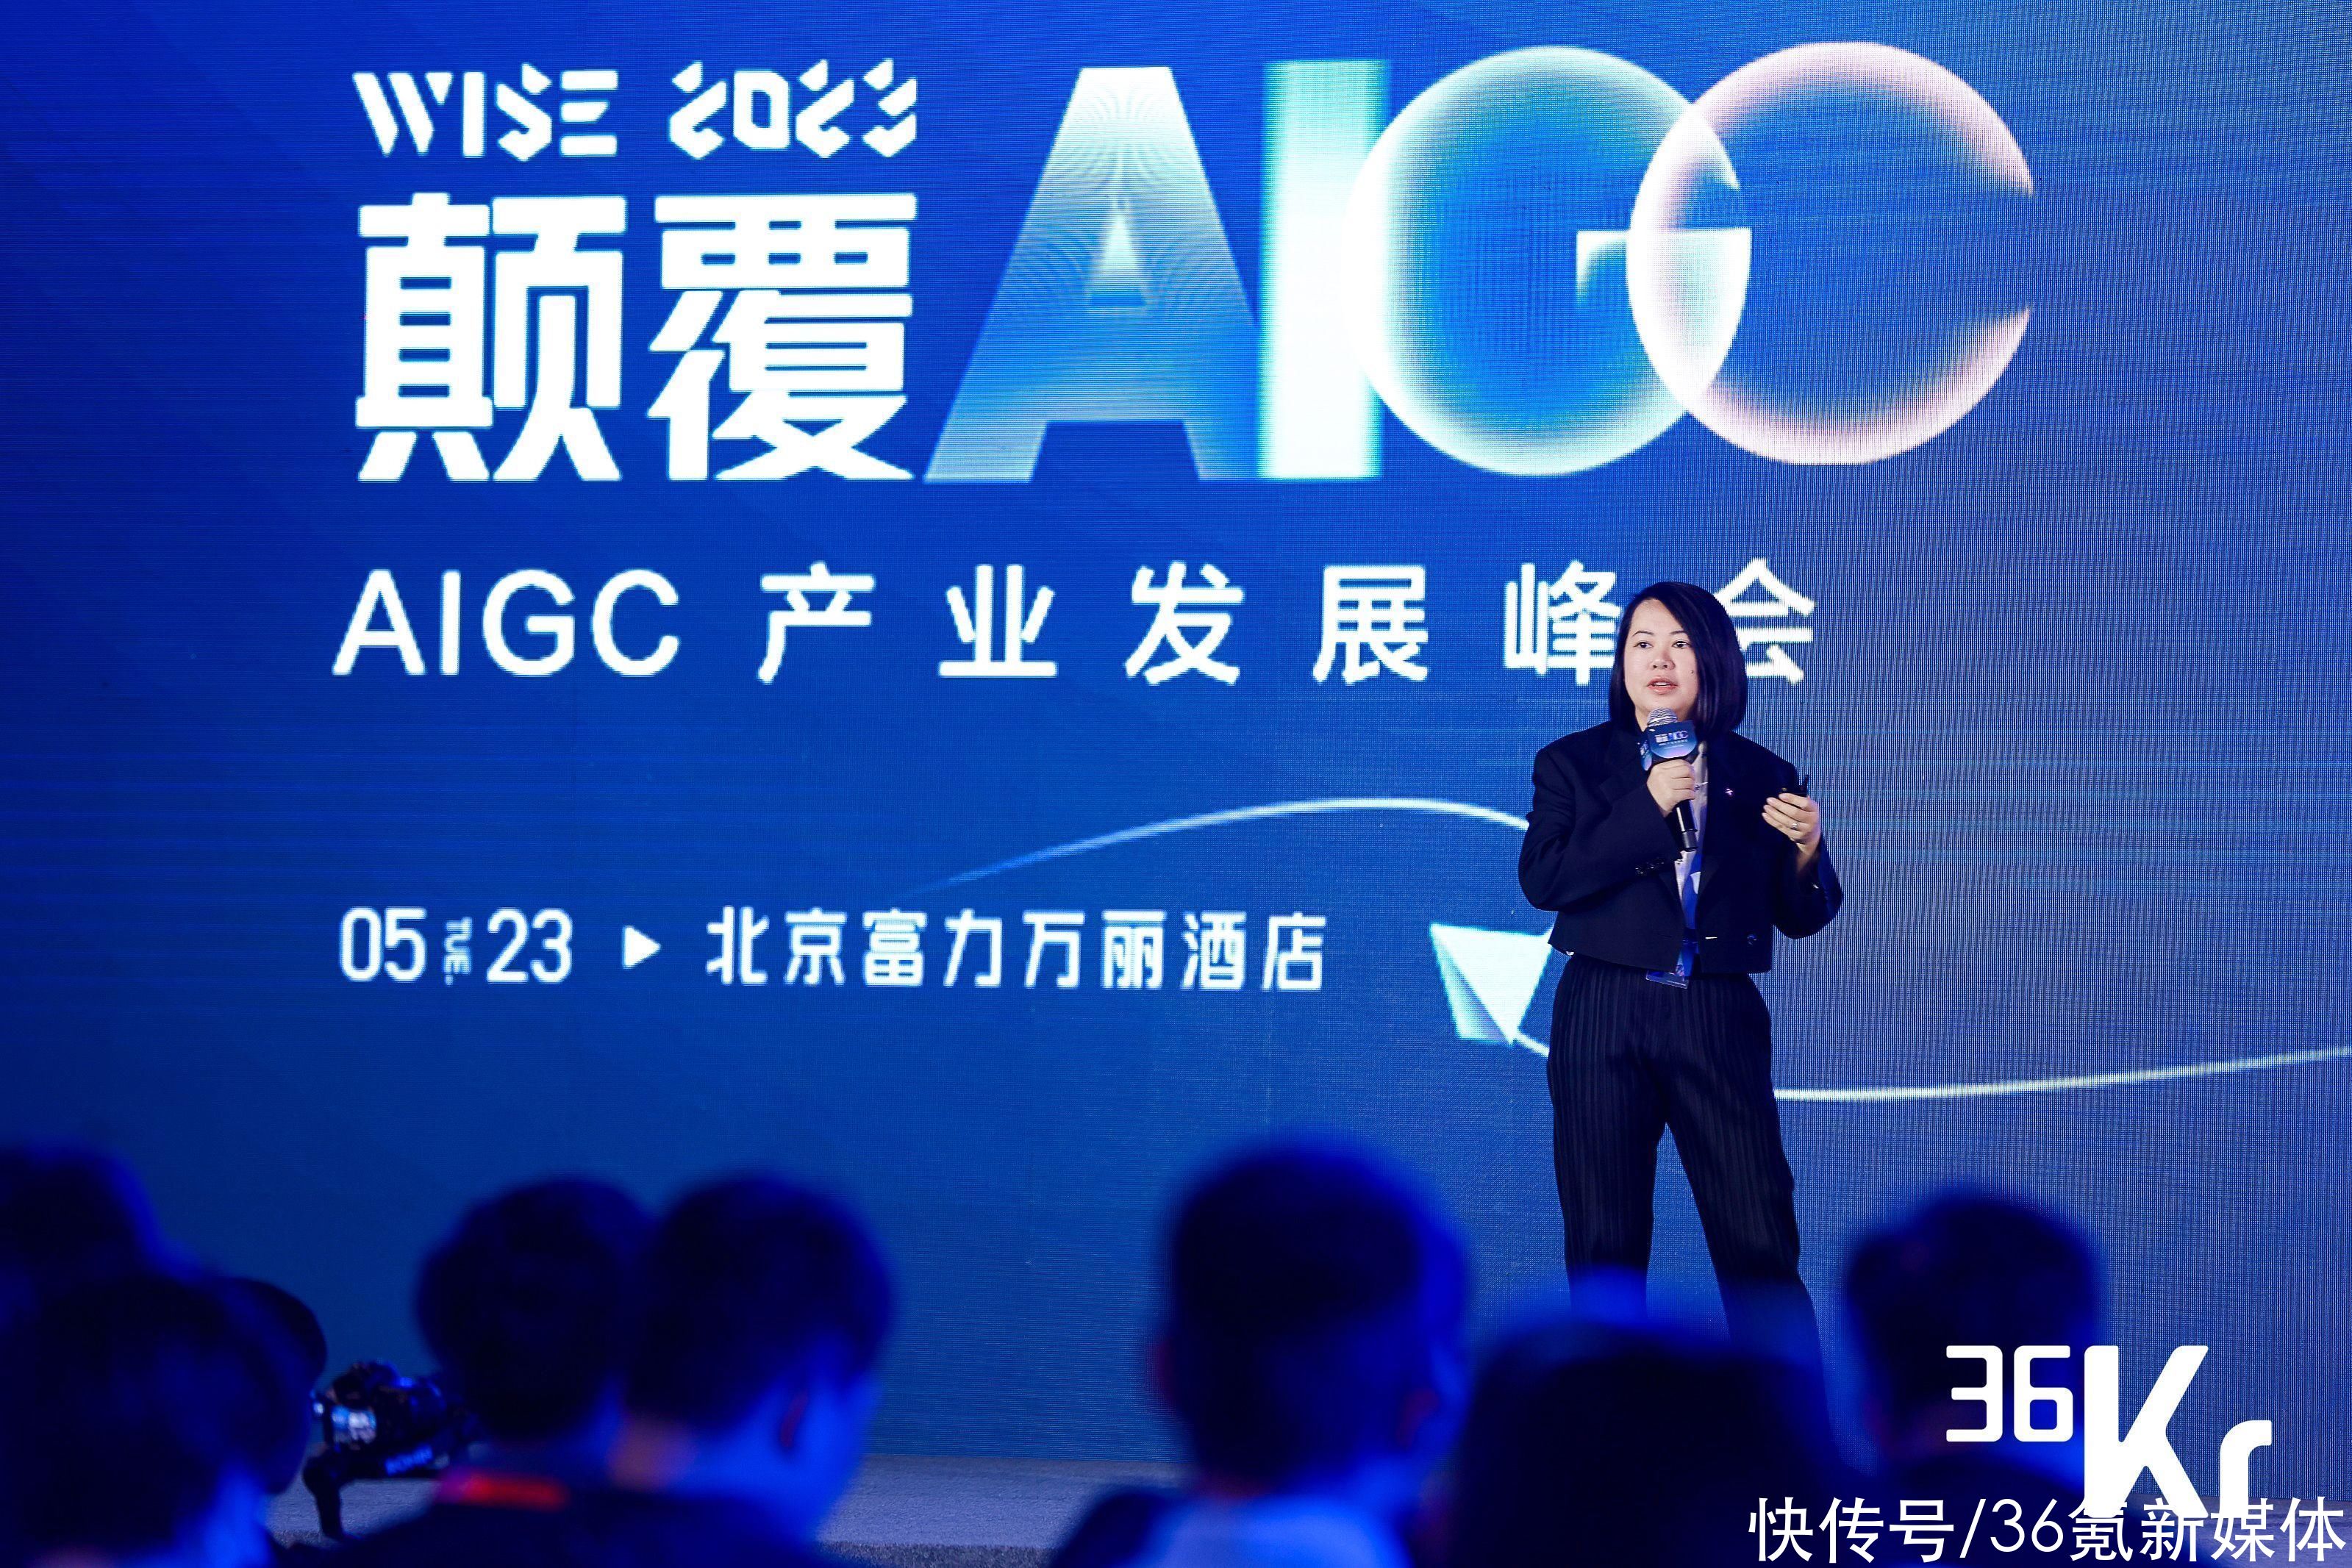 小库科技CEO何宛余：泛建筑设计领域的AIGC创享之路 | WISE2023颠覆AIGC产业发展峰会